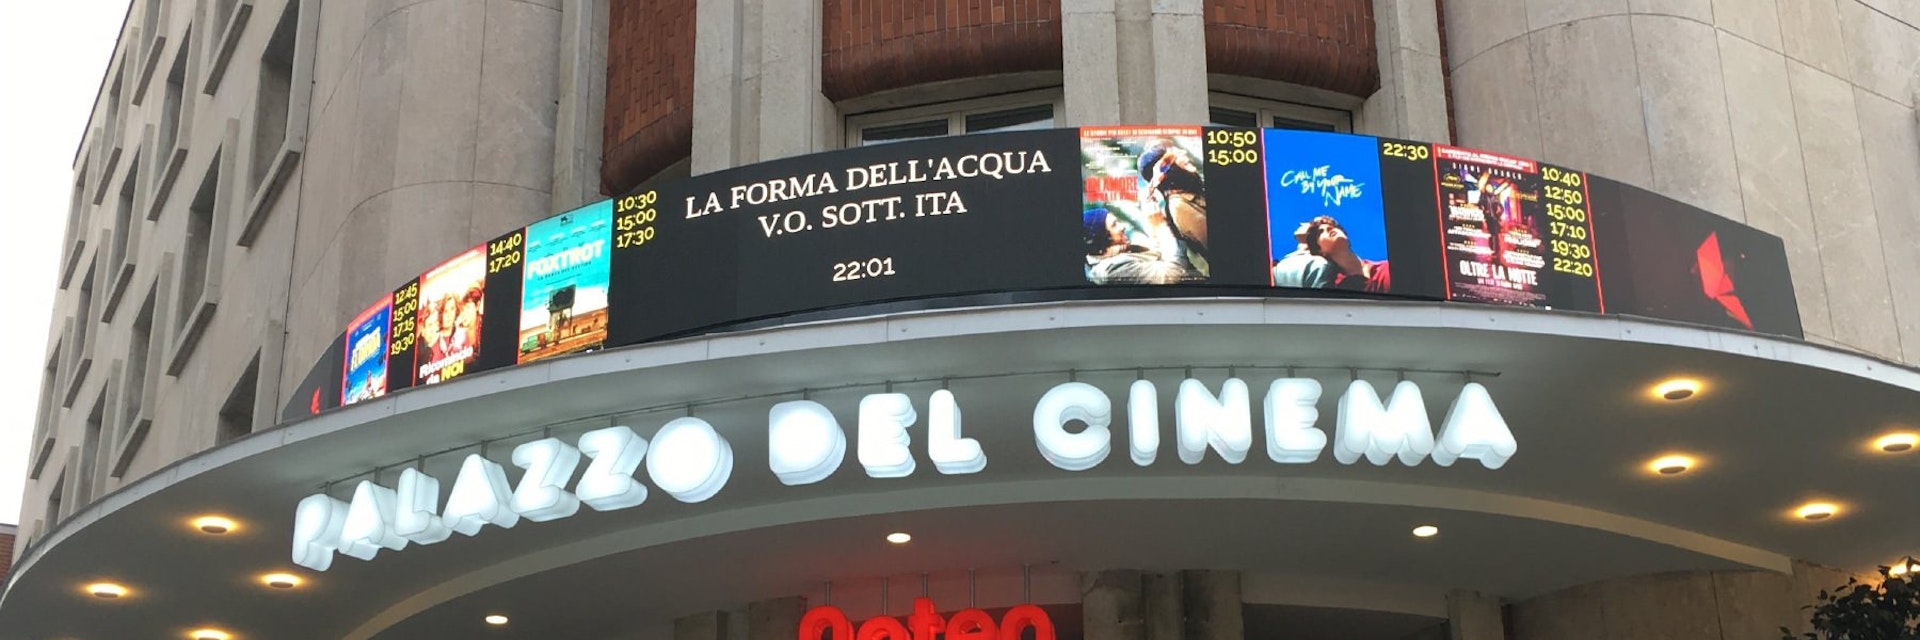 Anteo Palazzo del Cinema entrance